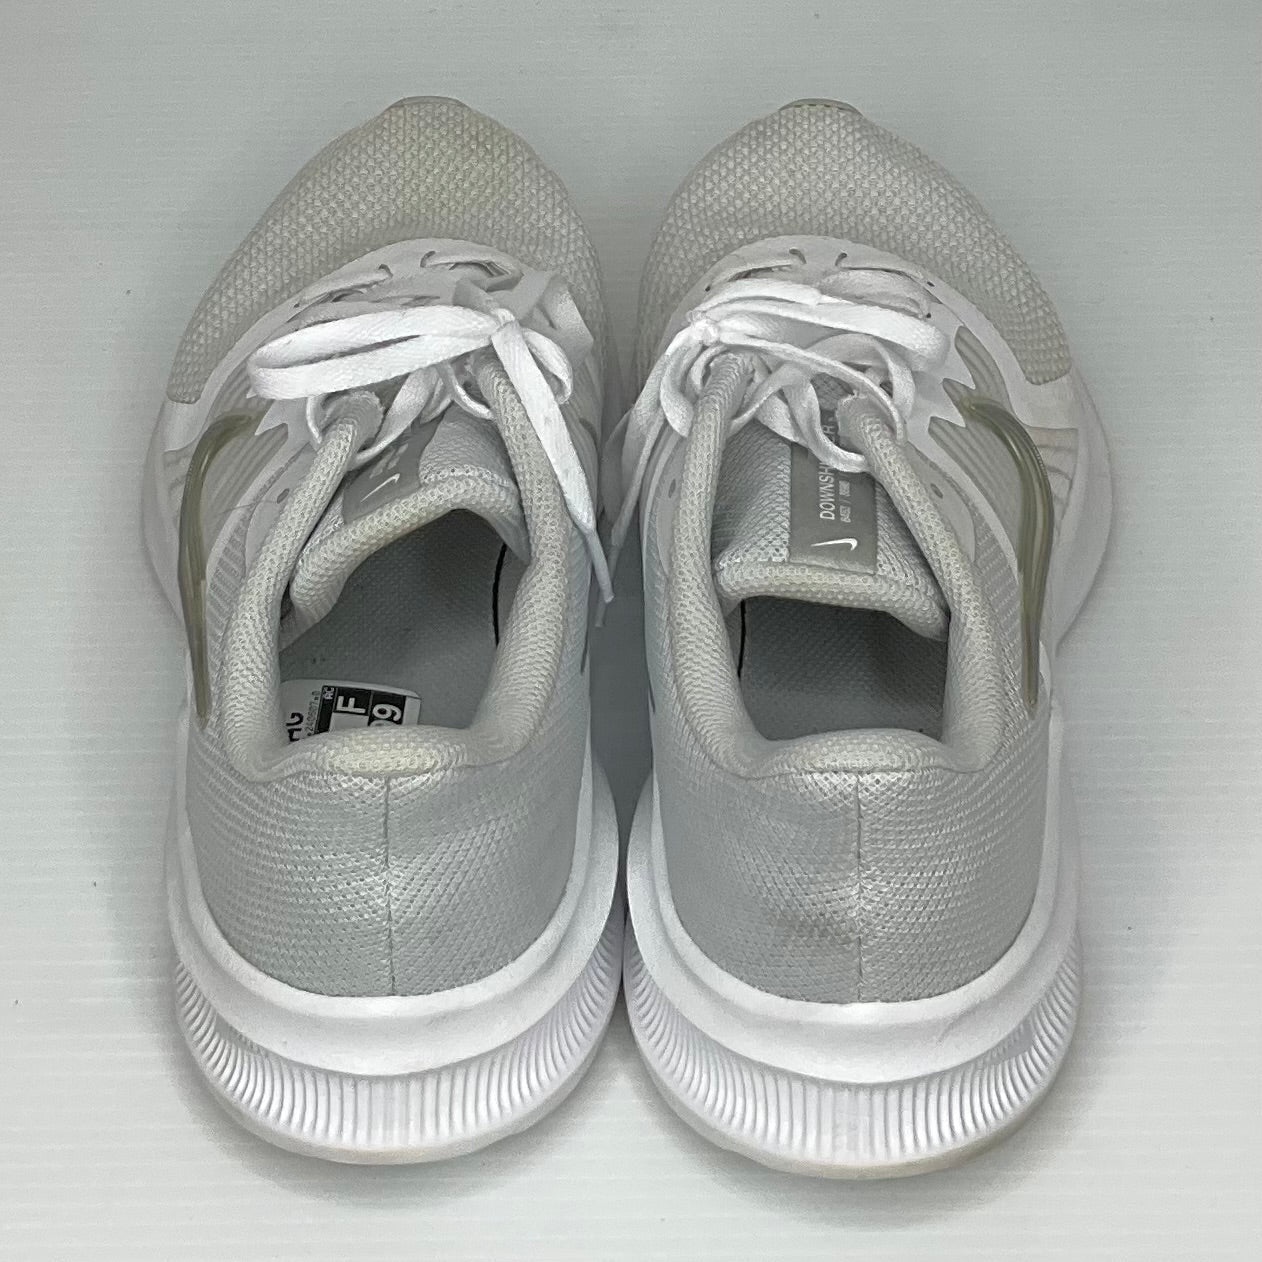 White Shoes Athletic Nike, Size 11